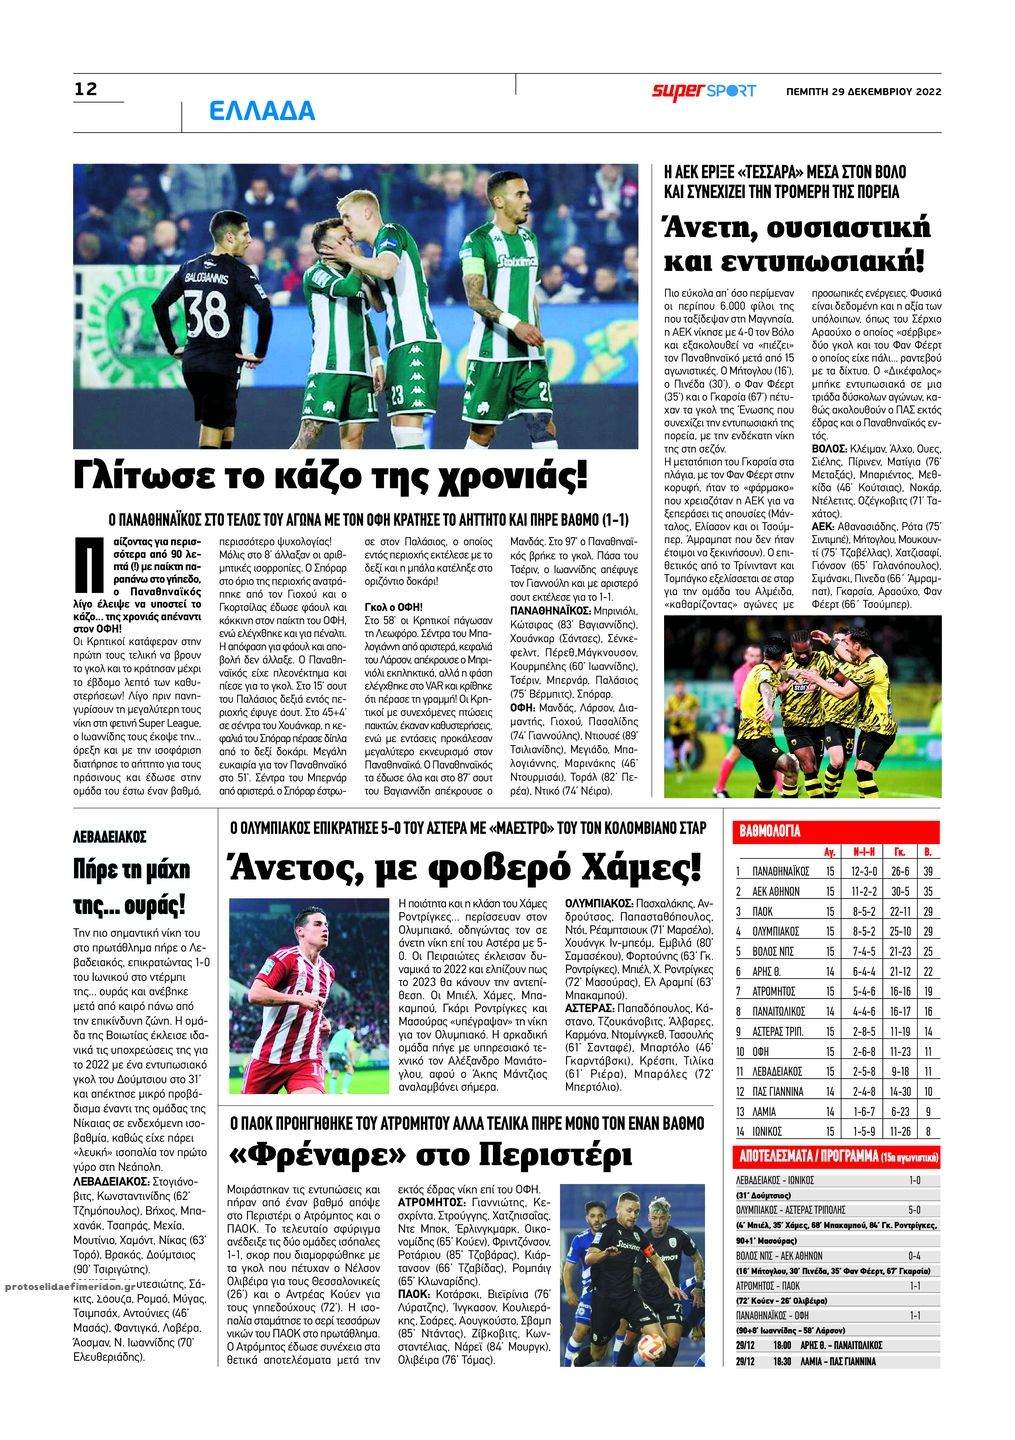 Οπισθόφυλλο εφημερίδας Αλήθεια Κύπρου supersport